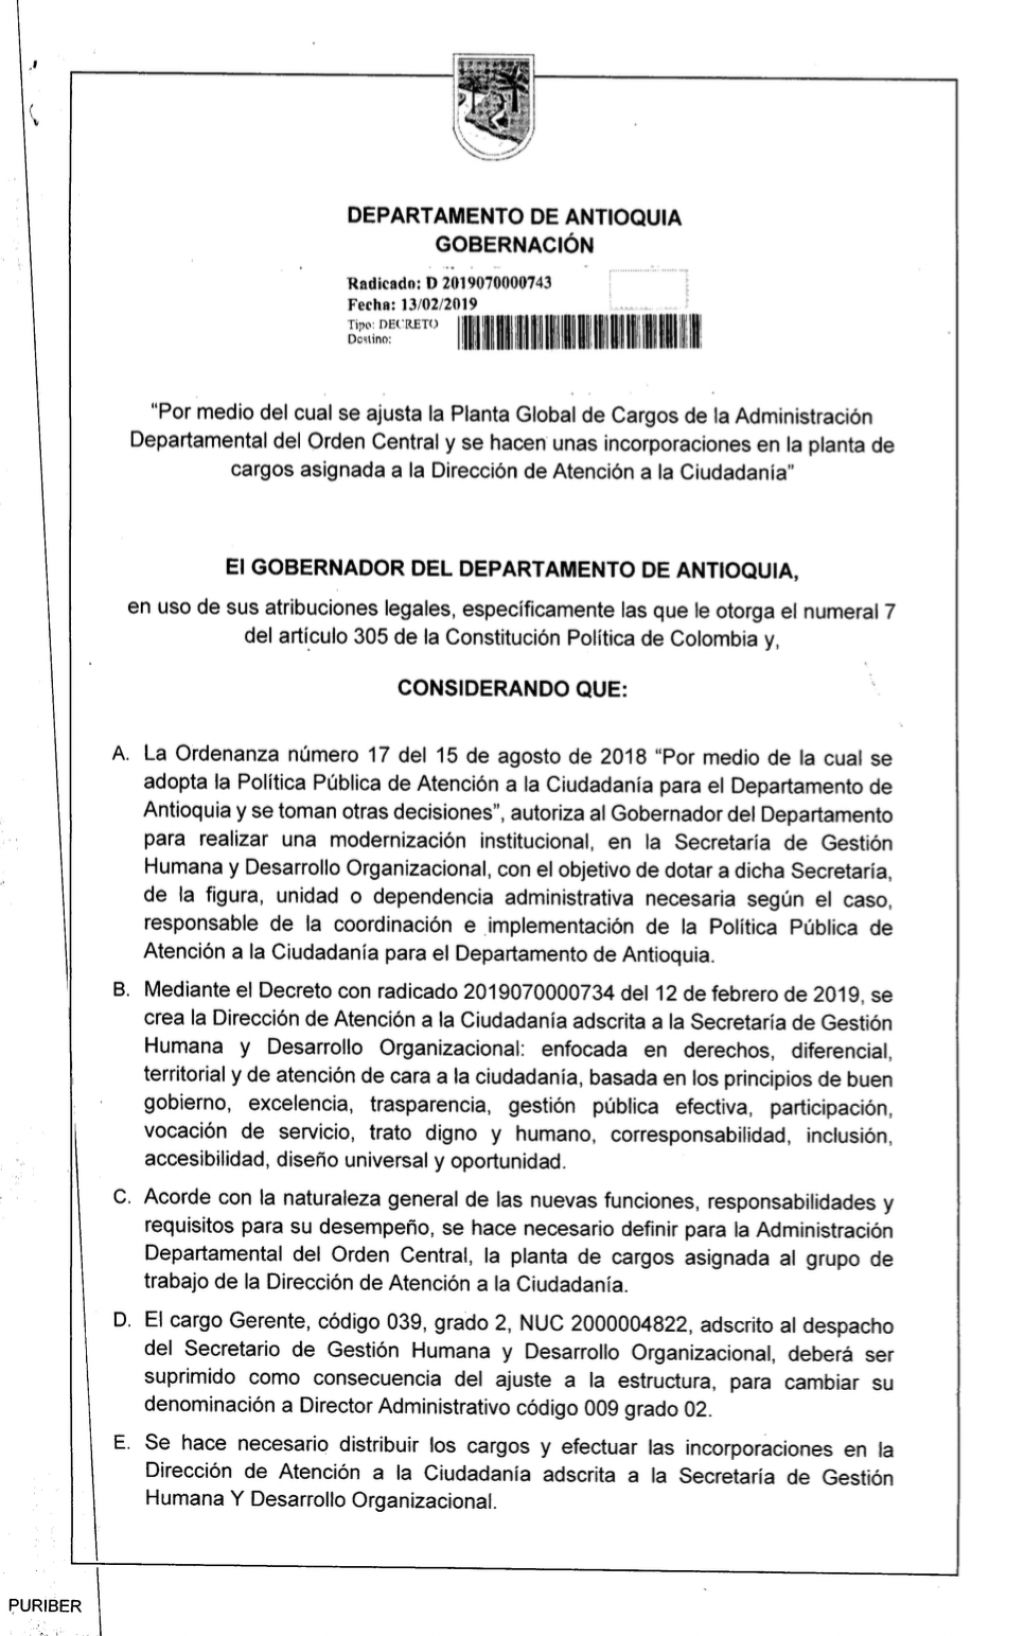 Dirección de Atención a la Ciudadanía de la Gobernación de Antioquia